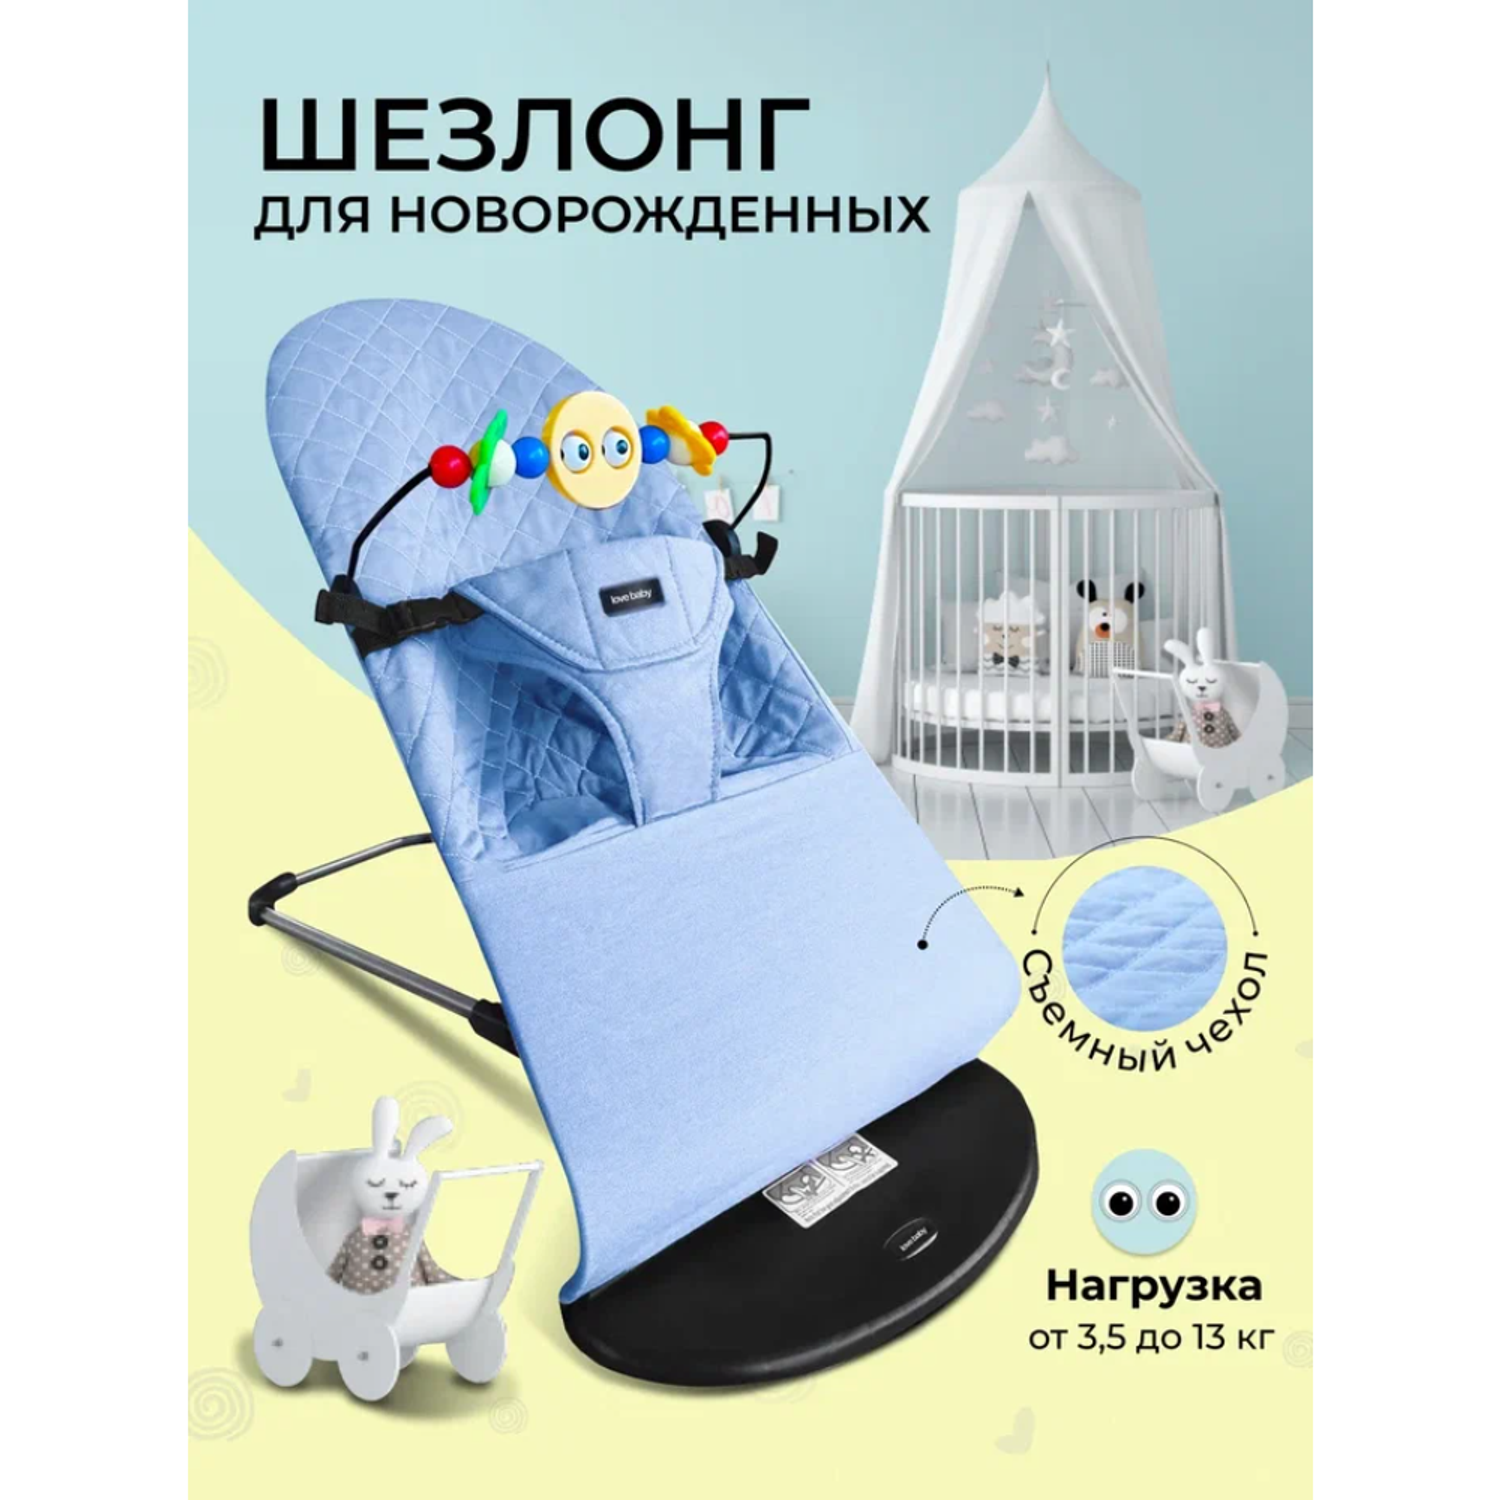 Шезлонг детский PlayKid голубой страна производства Китай  265-люлька-качалка-голубой купить по цене 3750 ₽ в интернет-магазине  Детский мир